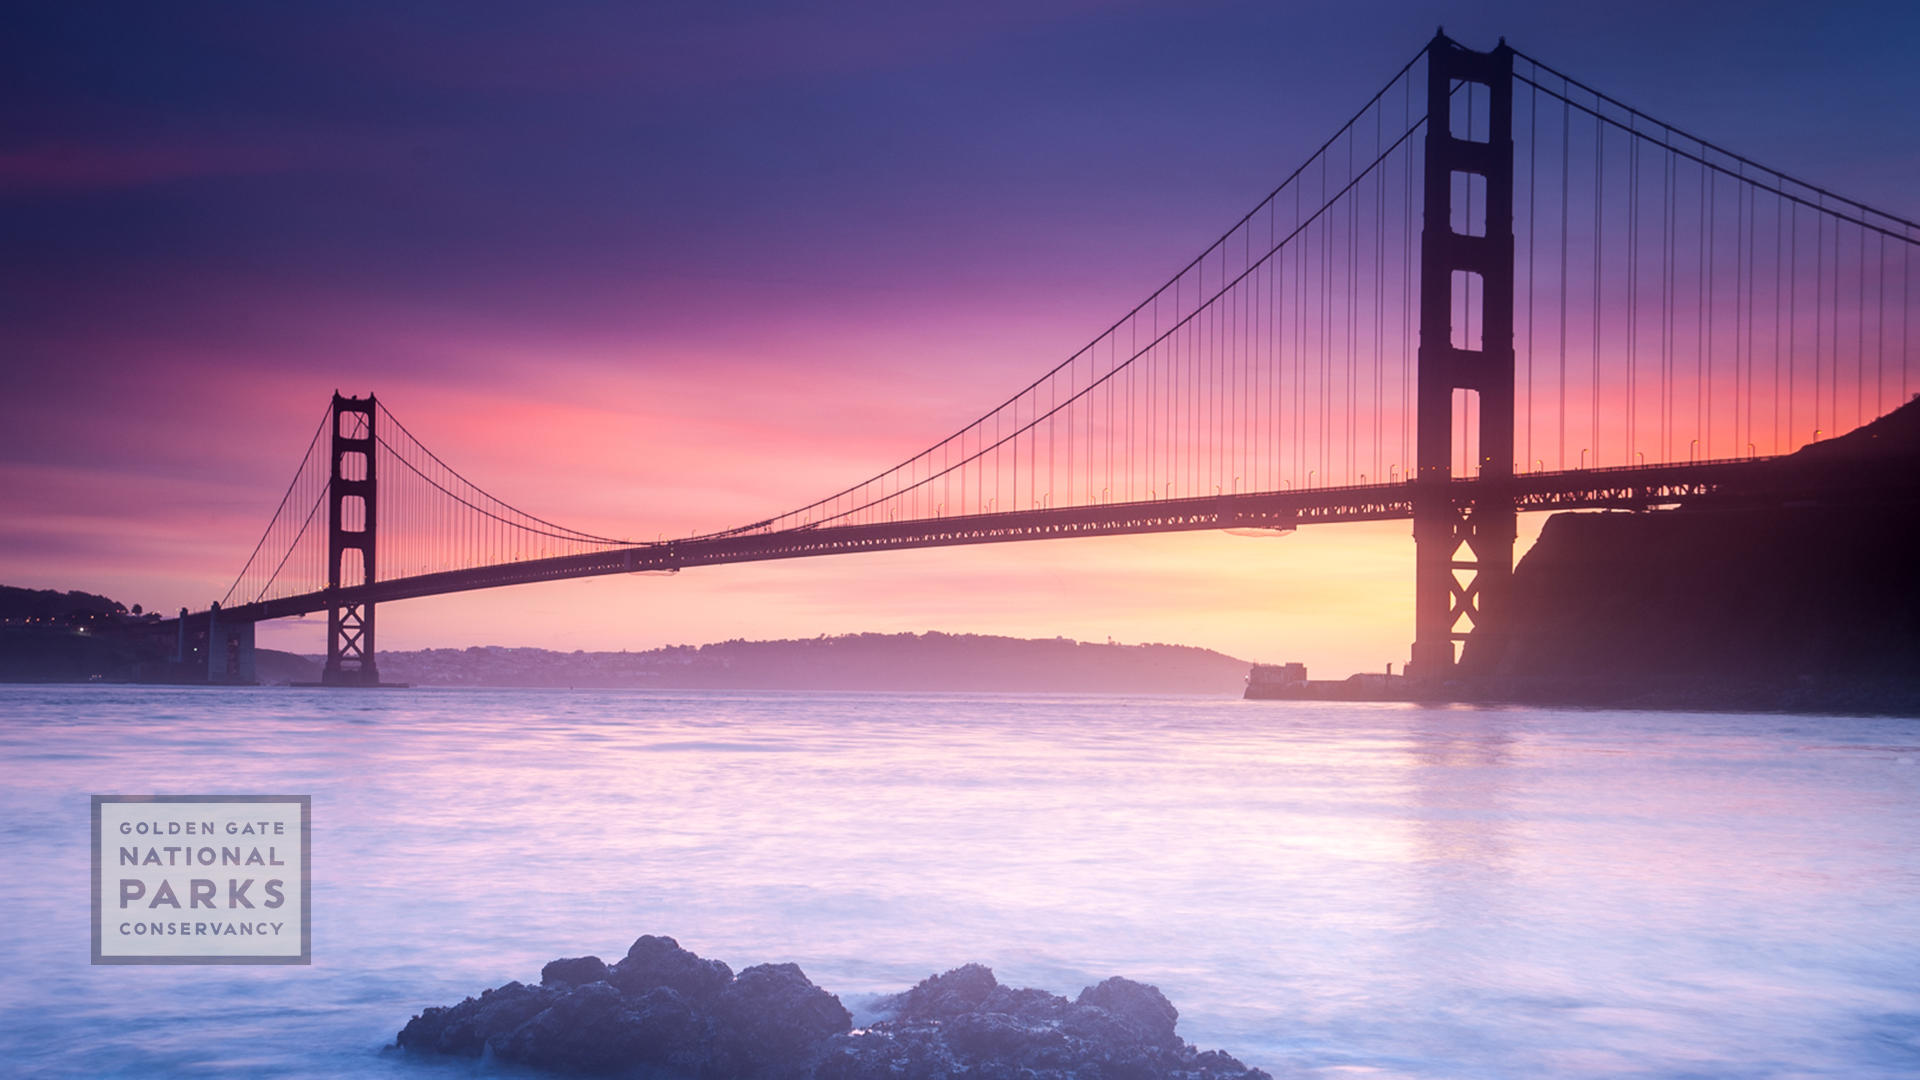 Golden Gate Bridge during a sunset